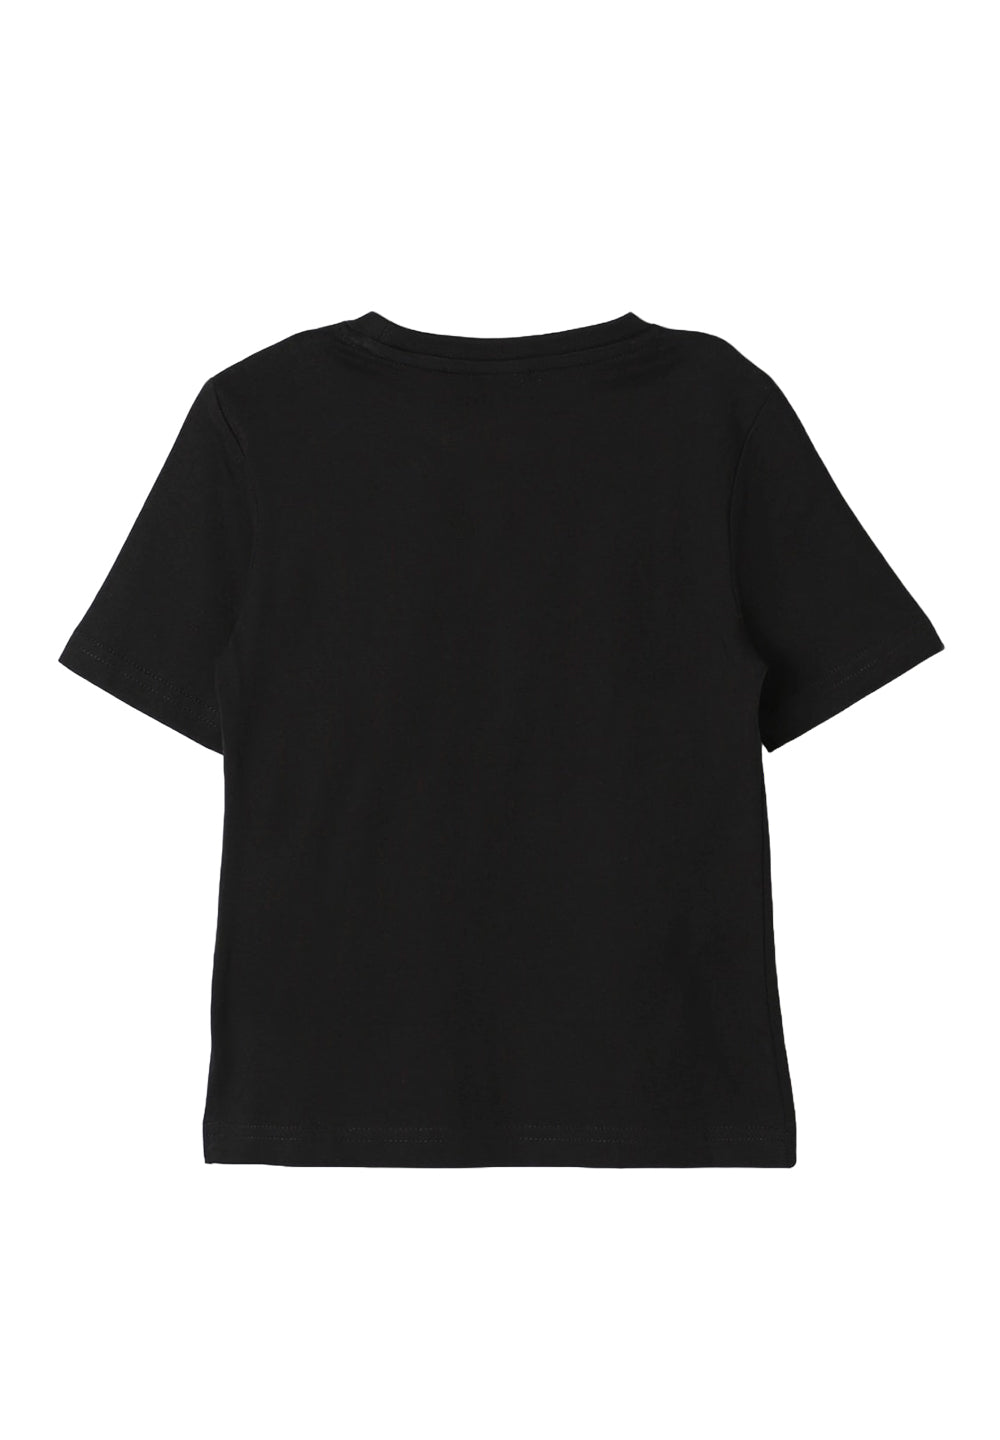 Schwarzes T-Shirt für Jungen